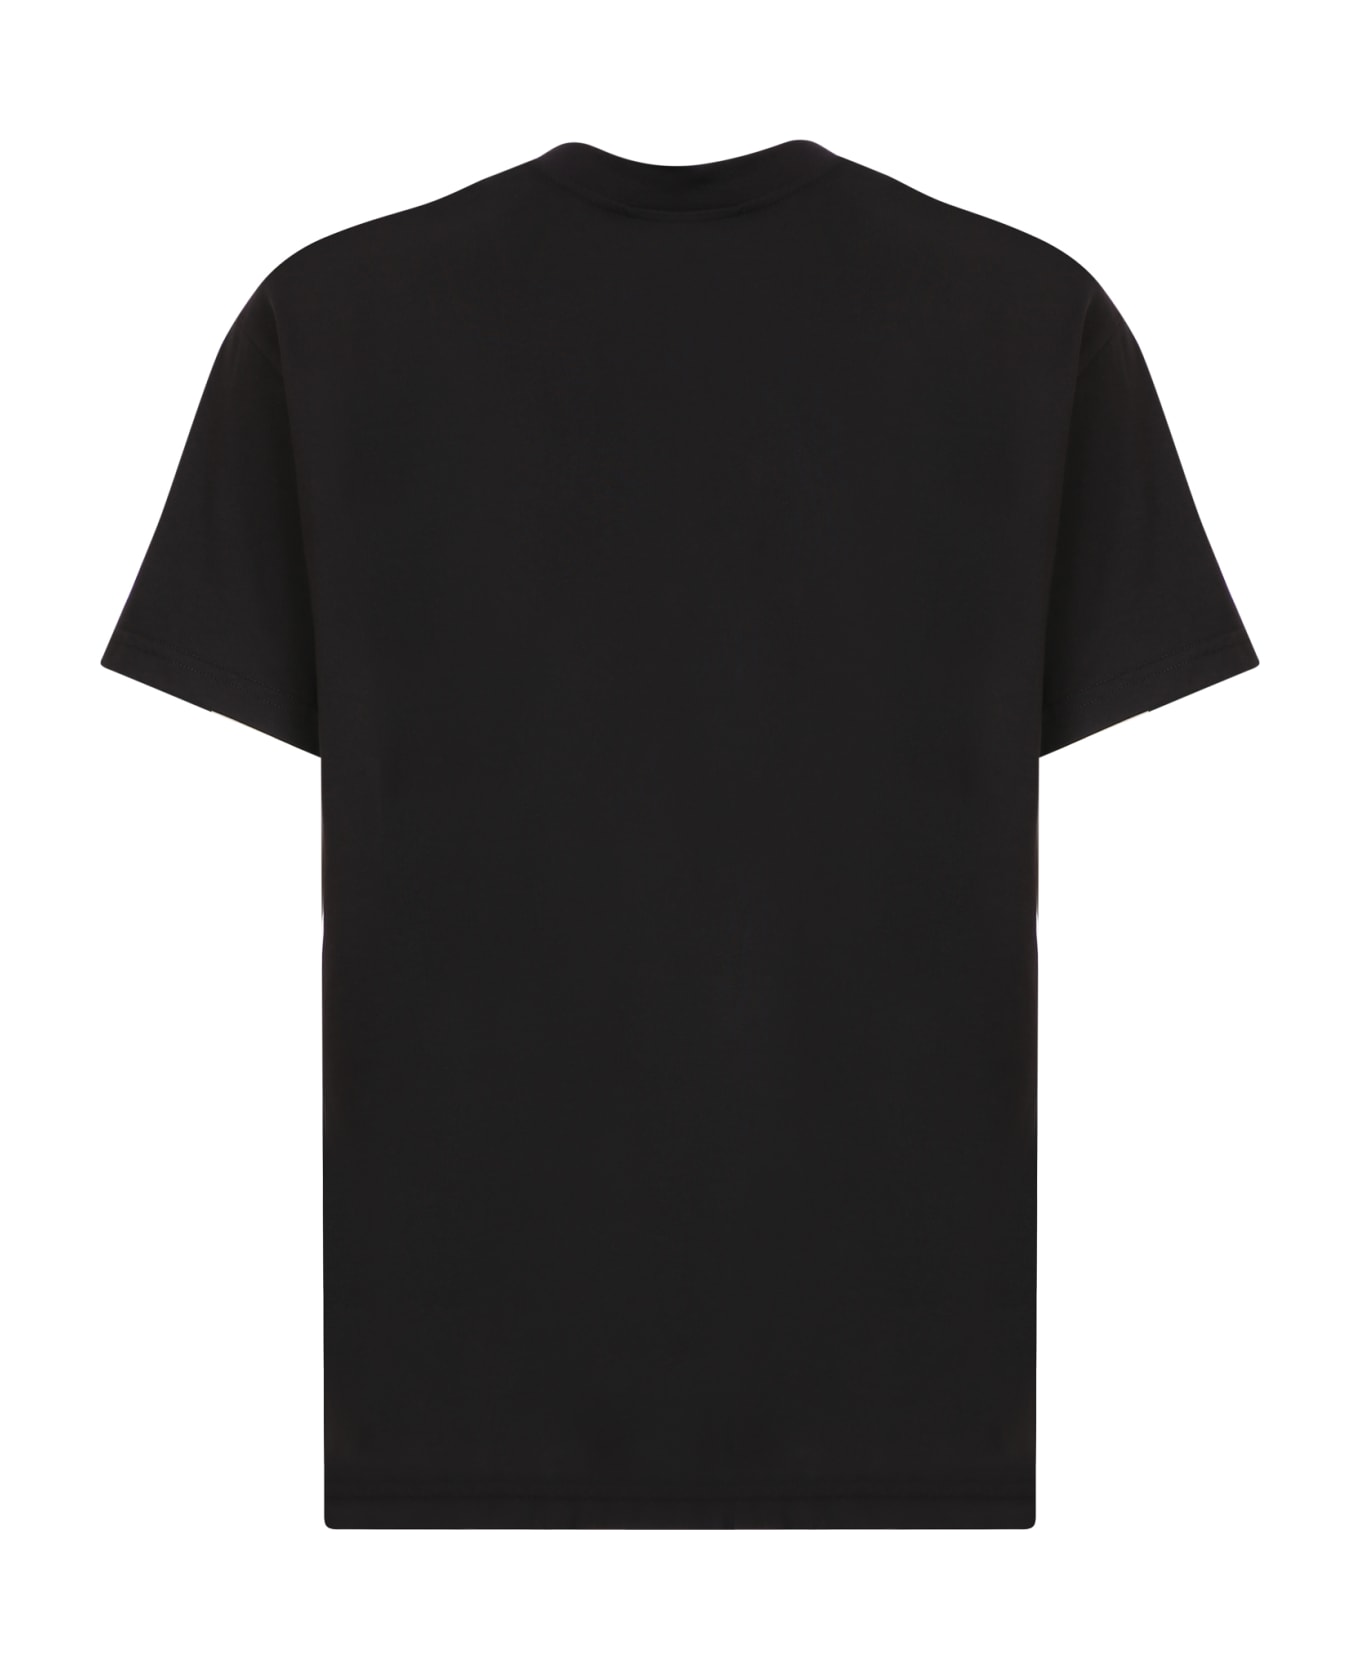 Ihs Hero T-shirt - Black